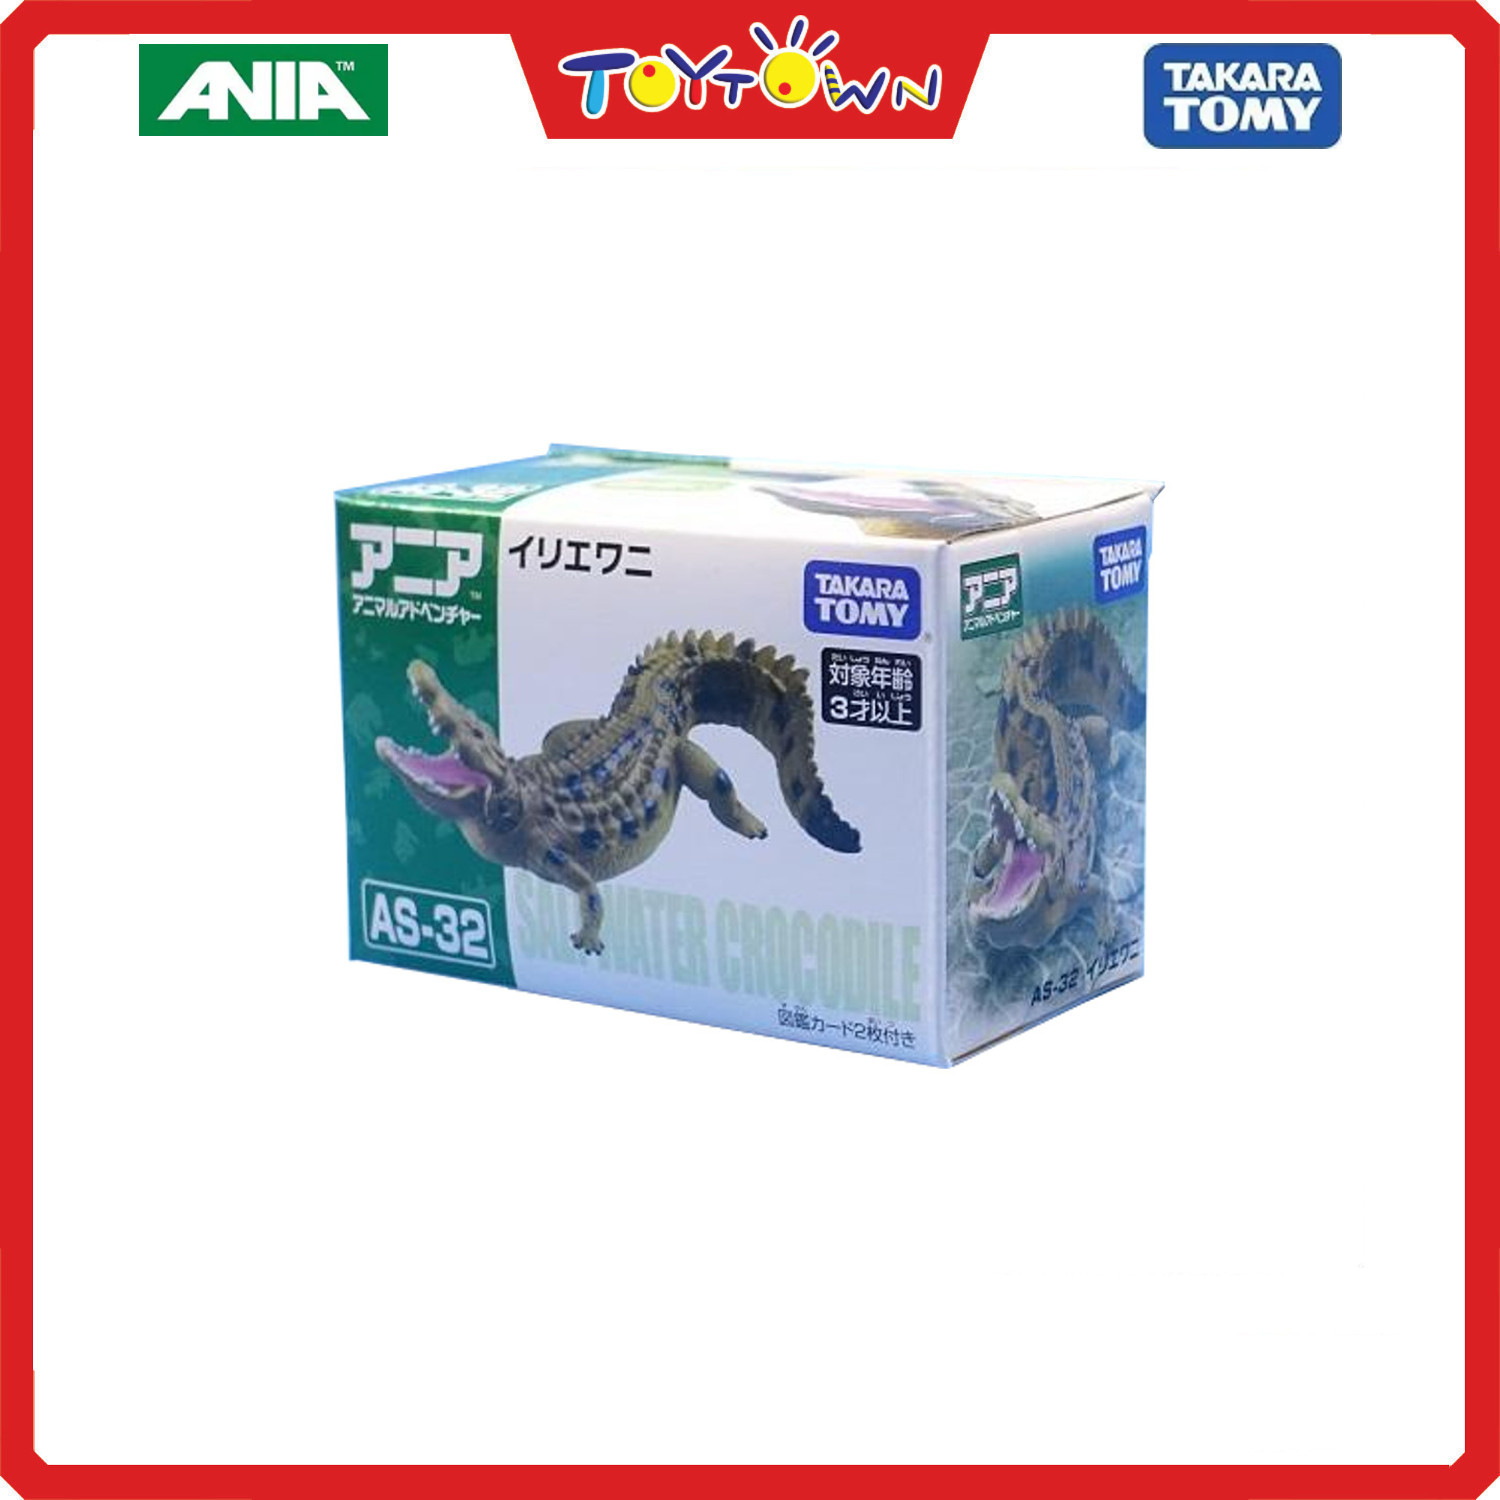 Takara Tomy Ania AS-32 Estuarine Crocodile Animal Figure Toy : :  Toys